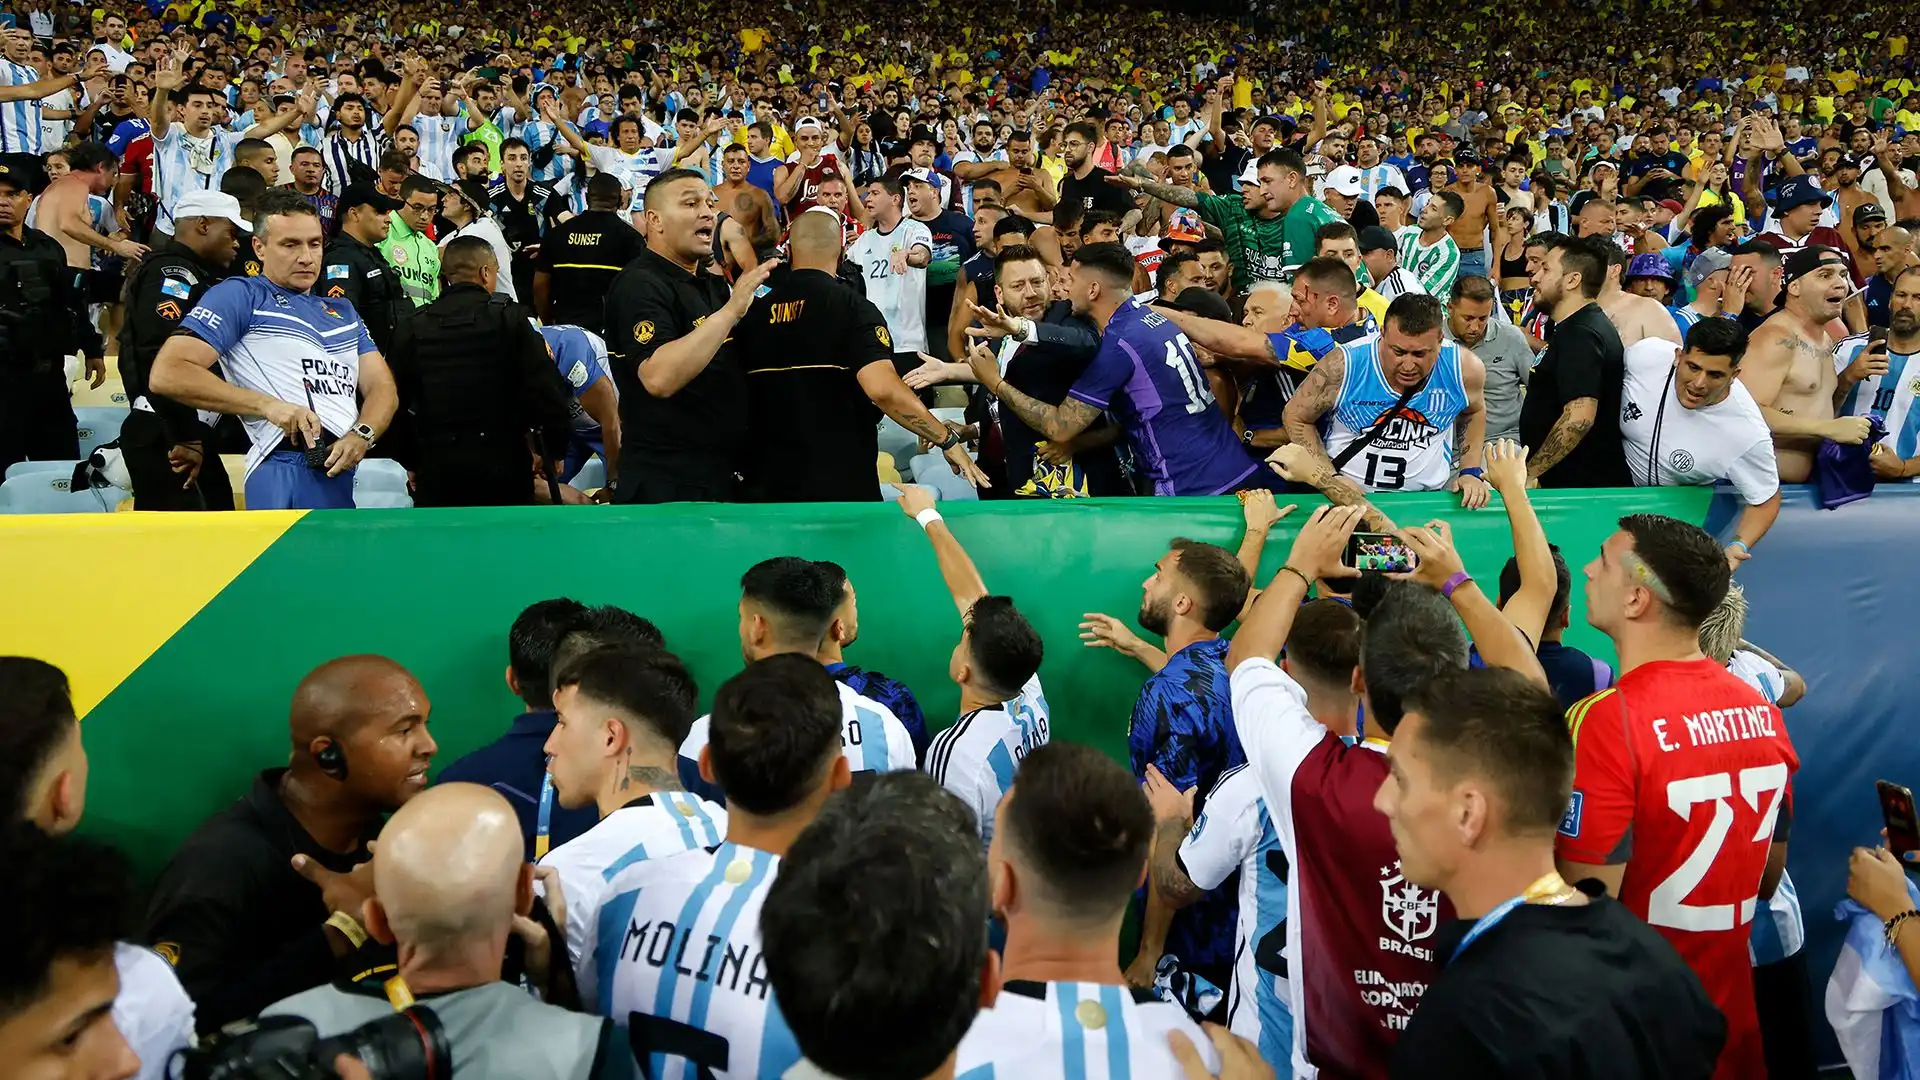 I calciatori argentini hanno anche parlato con la polizia per cercare di aiutare